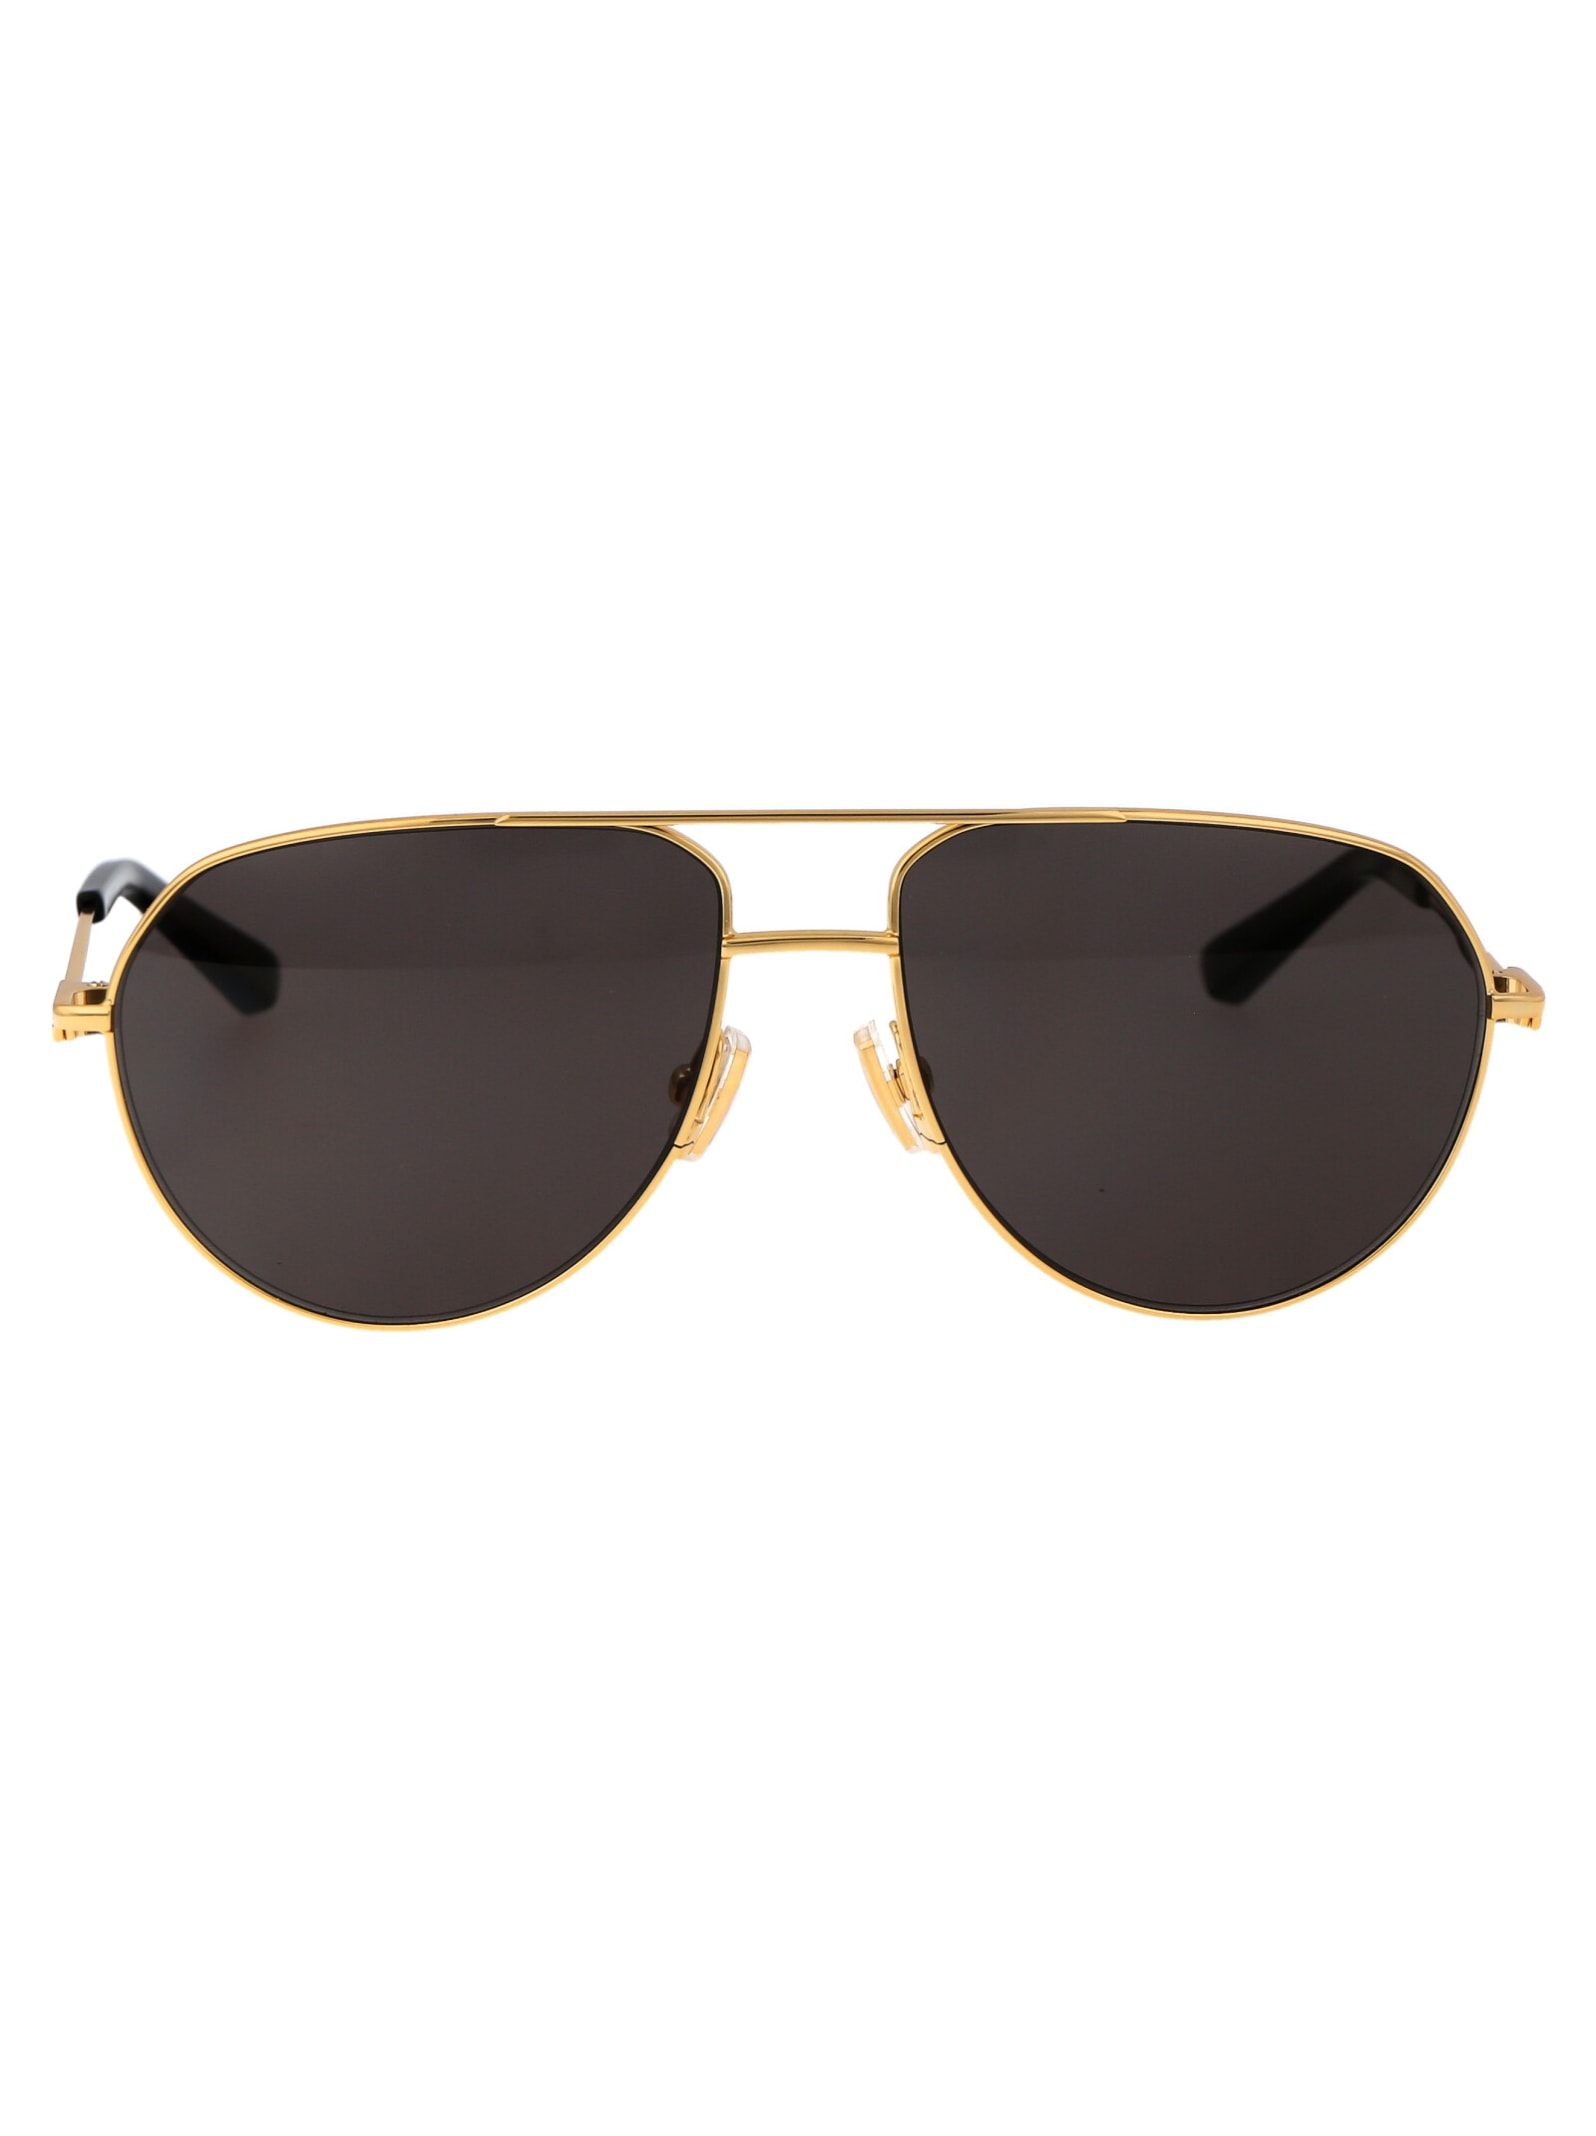 Bottega Veneta Bv1302s Sunglasses In 001 Gold Gold Grey